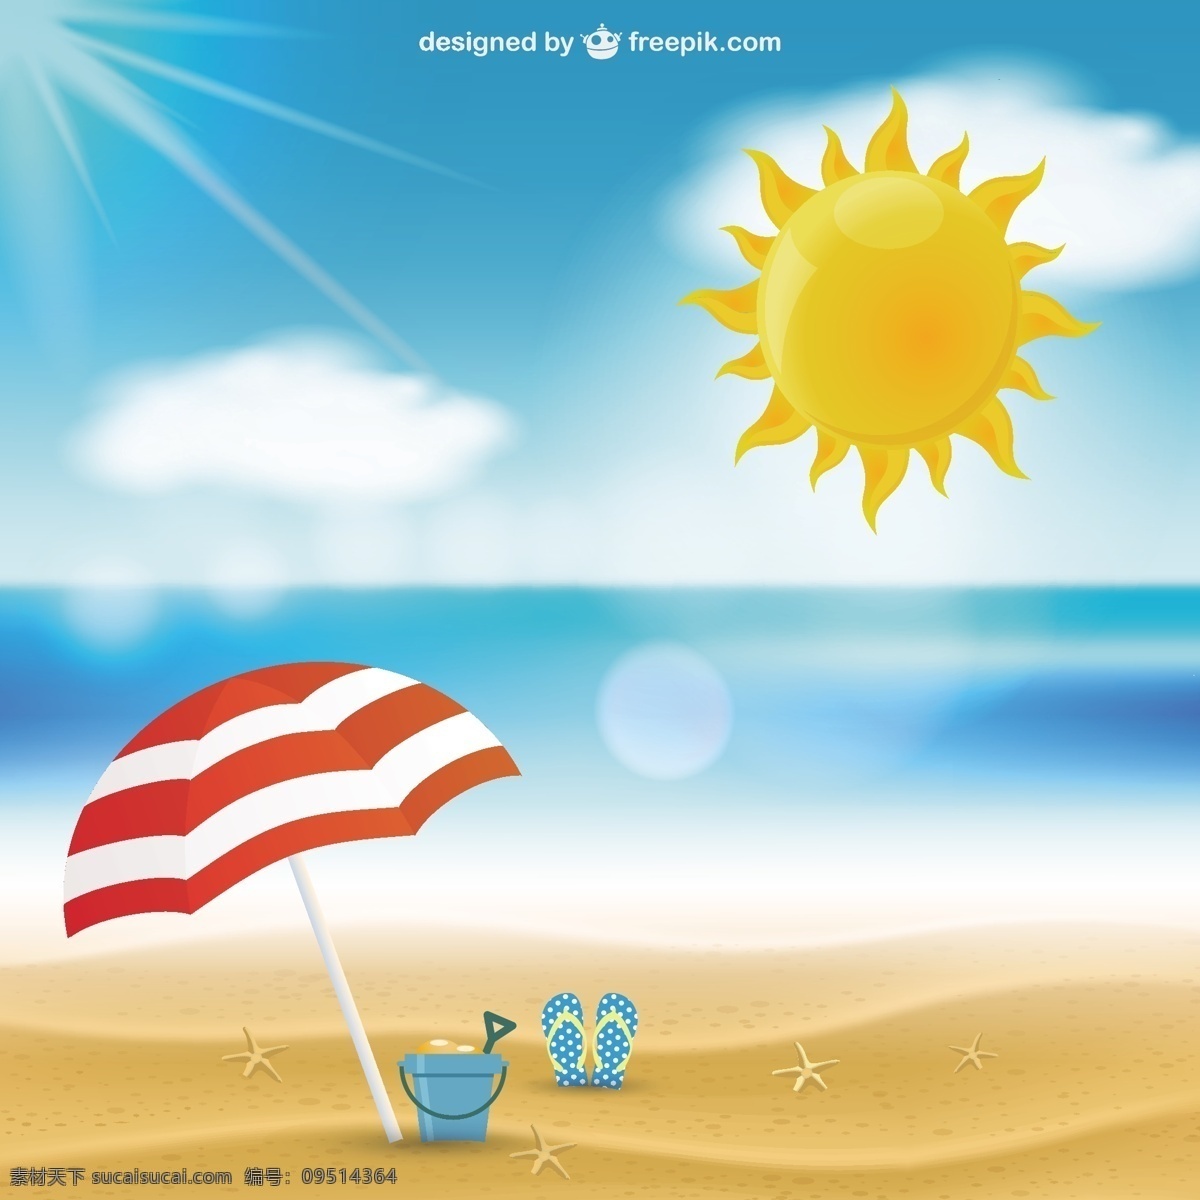 夏天的海景 夏天 阳光 沙滩 大海 夏日海滩度假 假期 阳光明媚 海边 阳伞 海景 青色 天蓝色